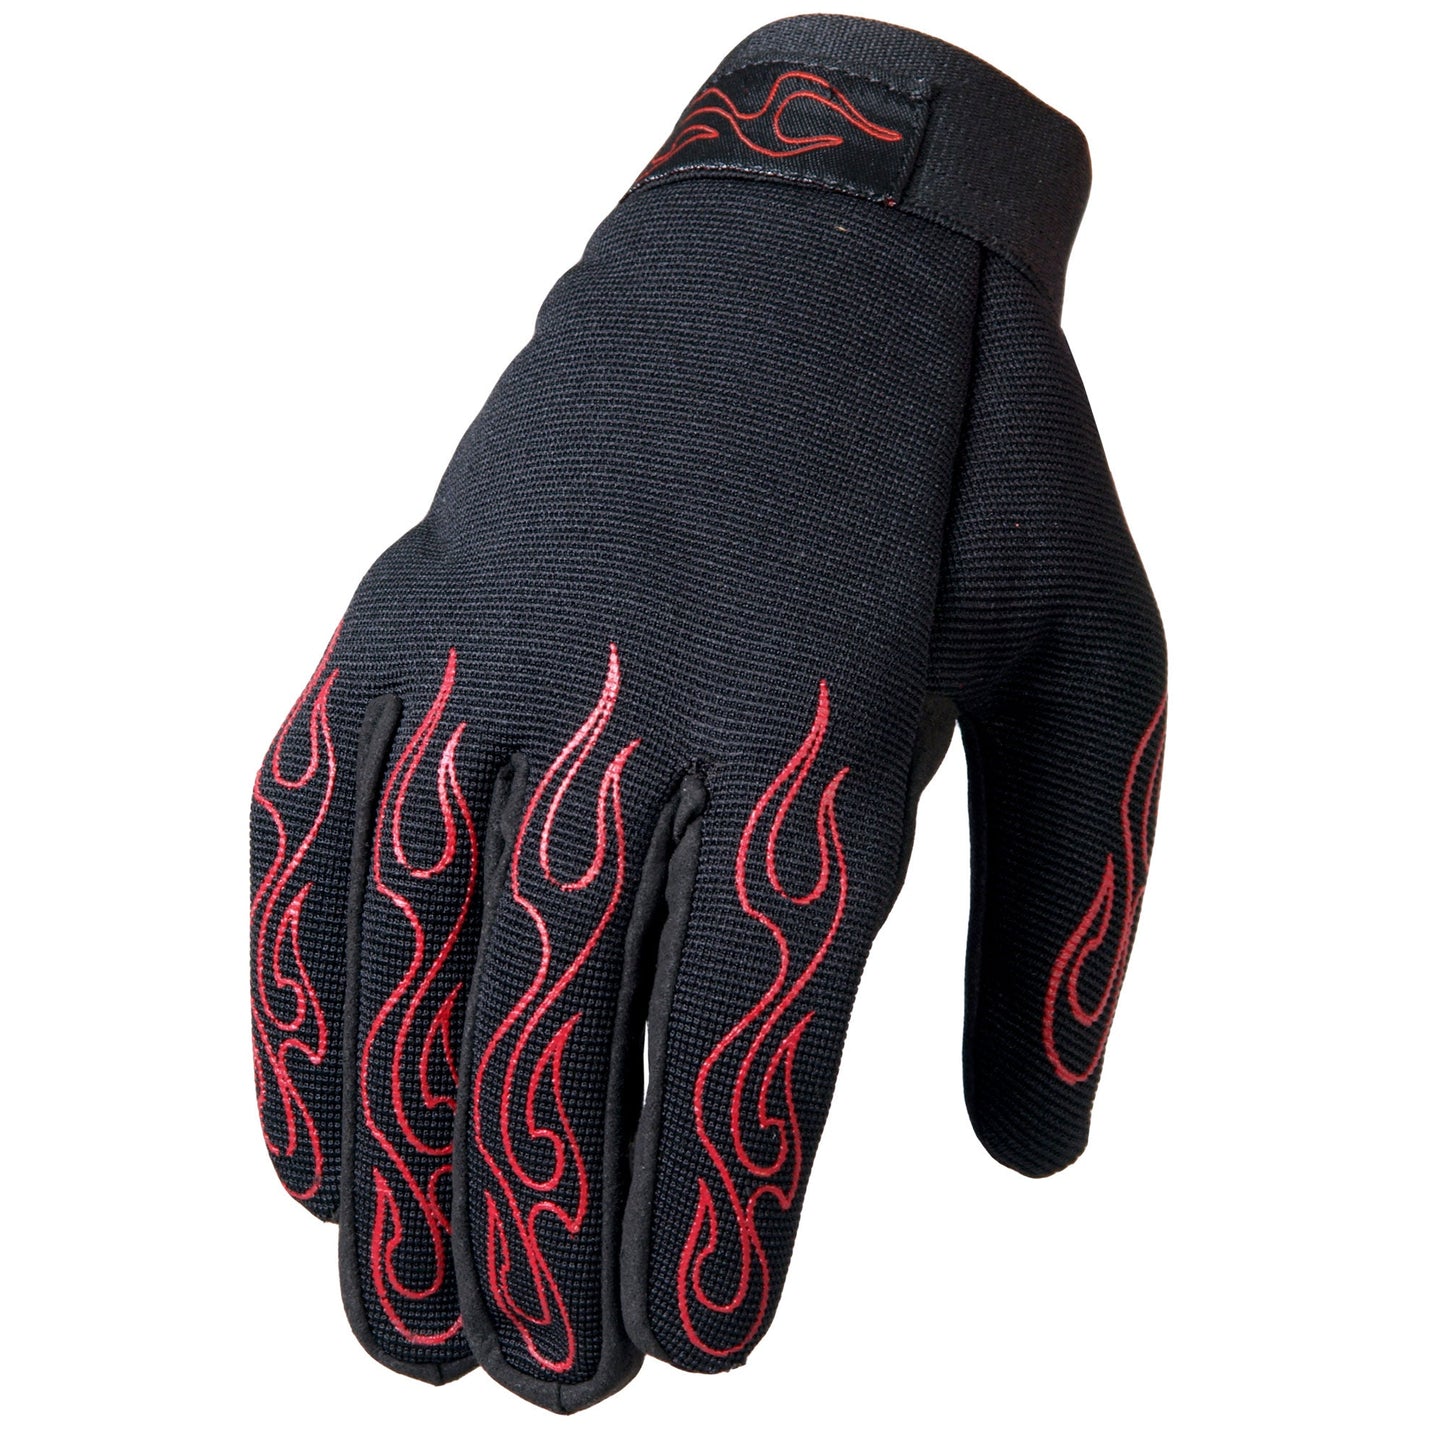 Uni-Sex Black 'Red Flames' Textile Mechanic Gloves